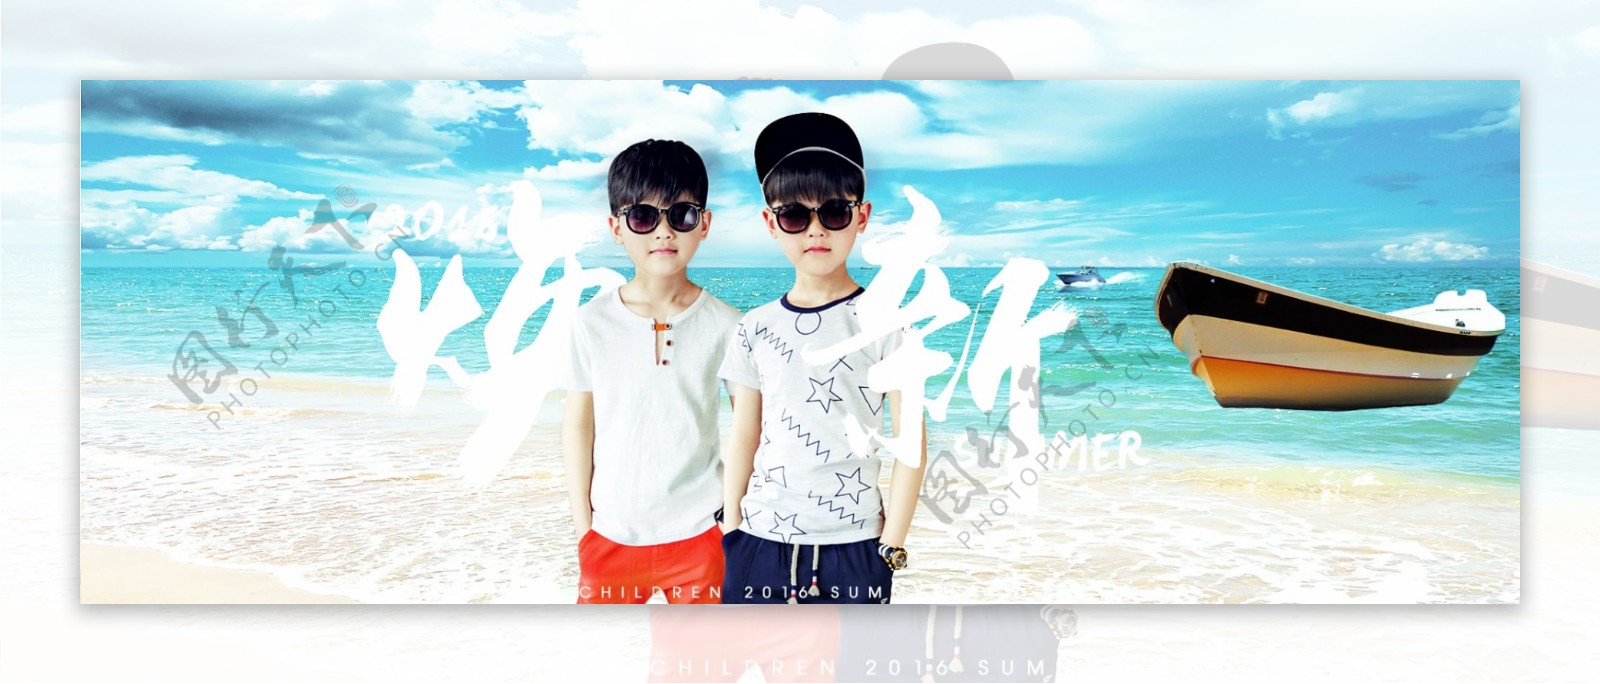 夏日沙滩海滩男童装清新海报粉丝狂欢节